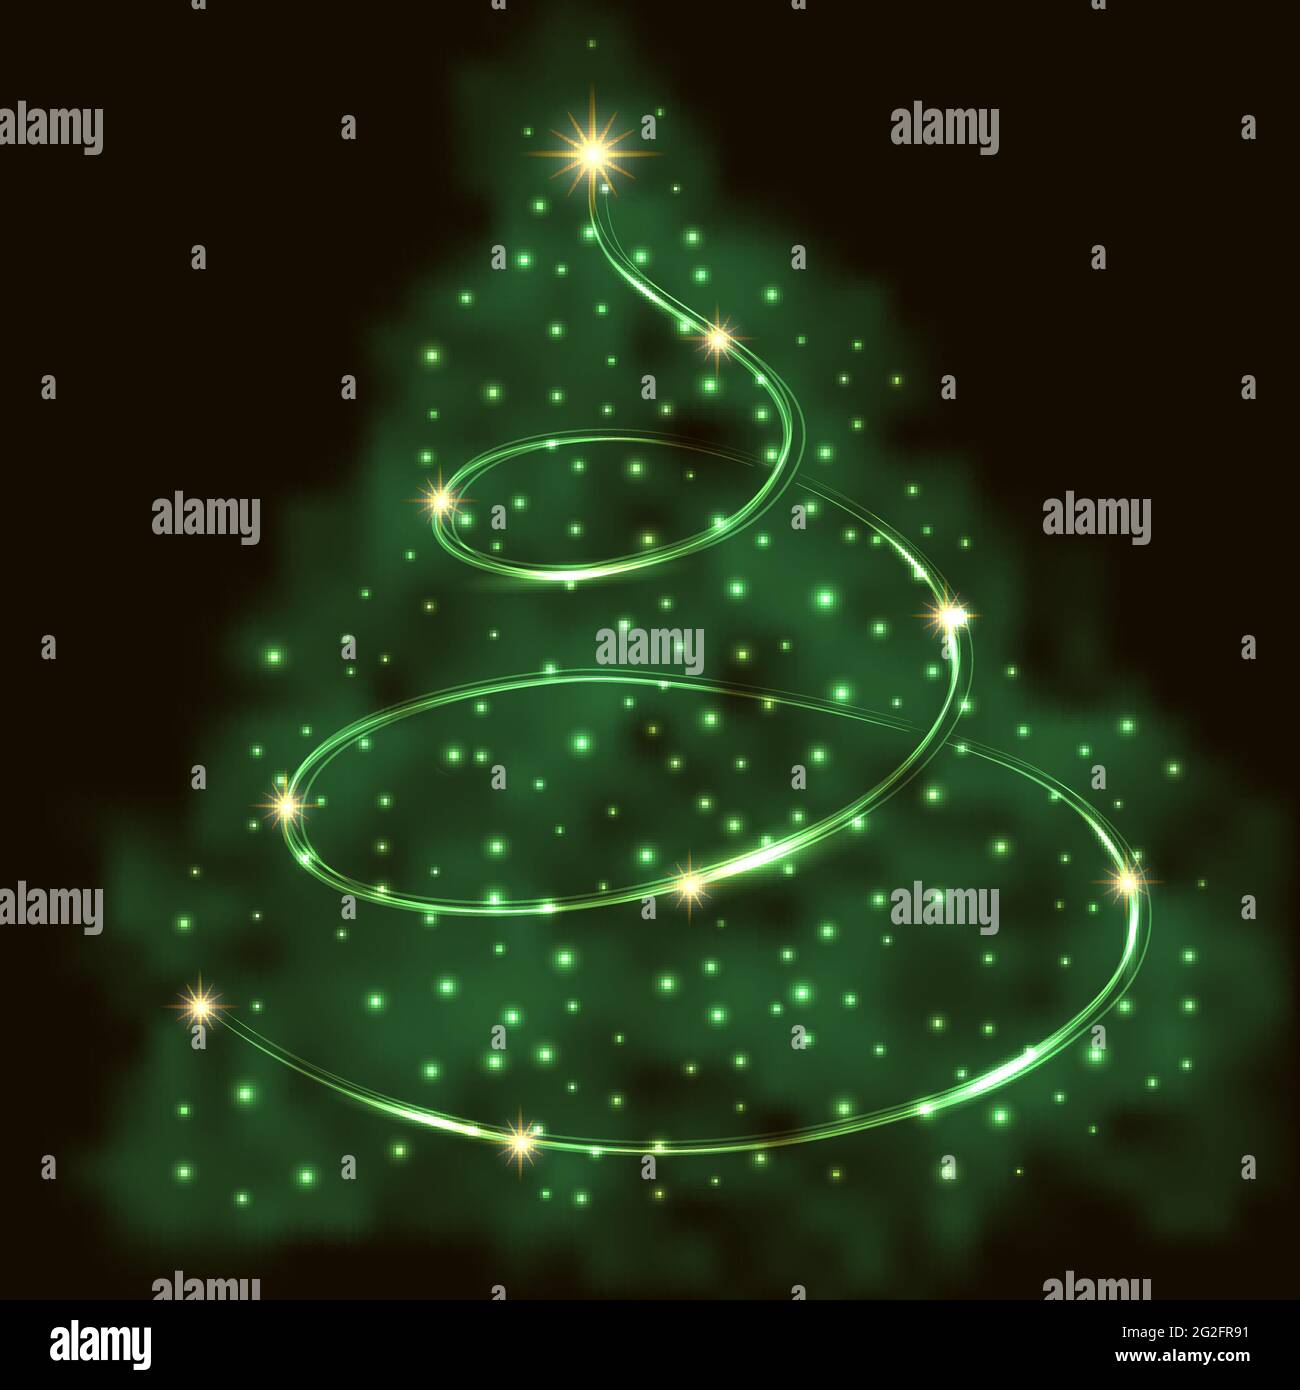 Albero di Natale con stelle dorate incandescenti, scintille lucenti e ghirlanda effetto neon. Illustrazione vettoriale del disegno di decorazione di notte di nuovo anno. Illustrazione Vettoriale